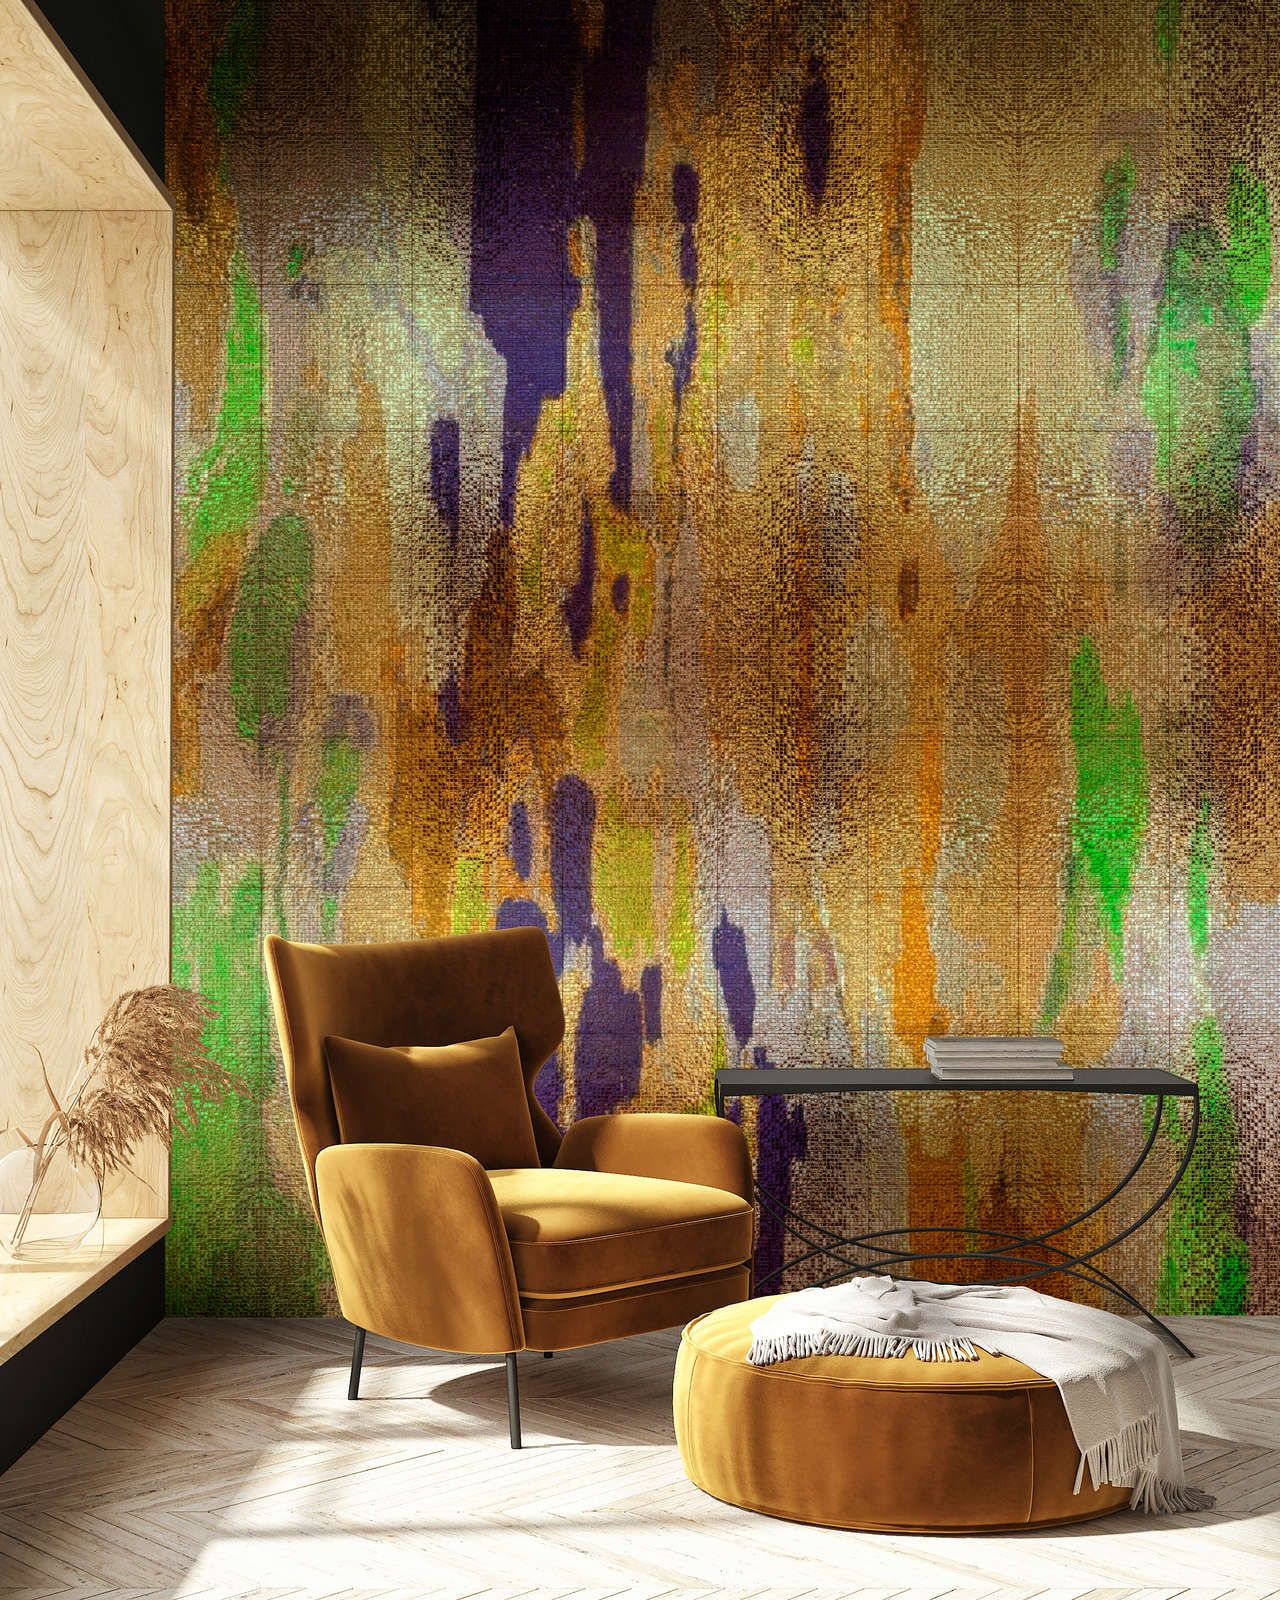             Fotomurali »marielle 1« - Gradienti di colore viola, oro, verde con struttura a mosaico - Materiali non tessuto liscio, leggermente perlato e scintillante
        